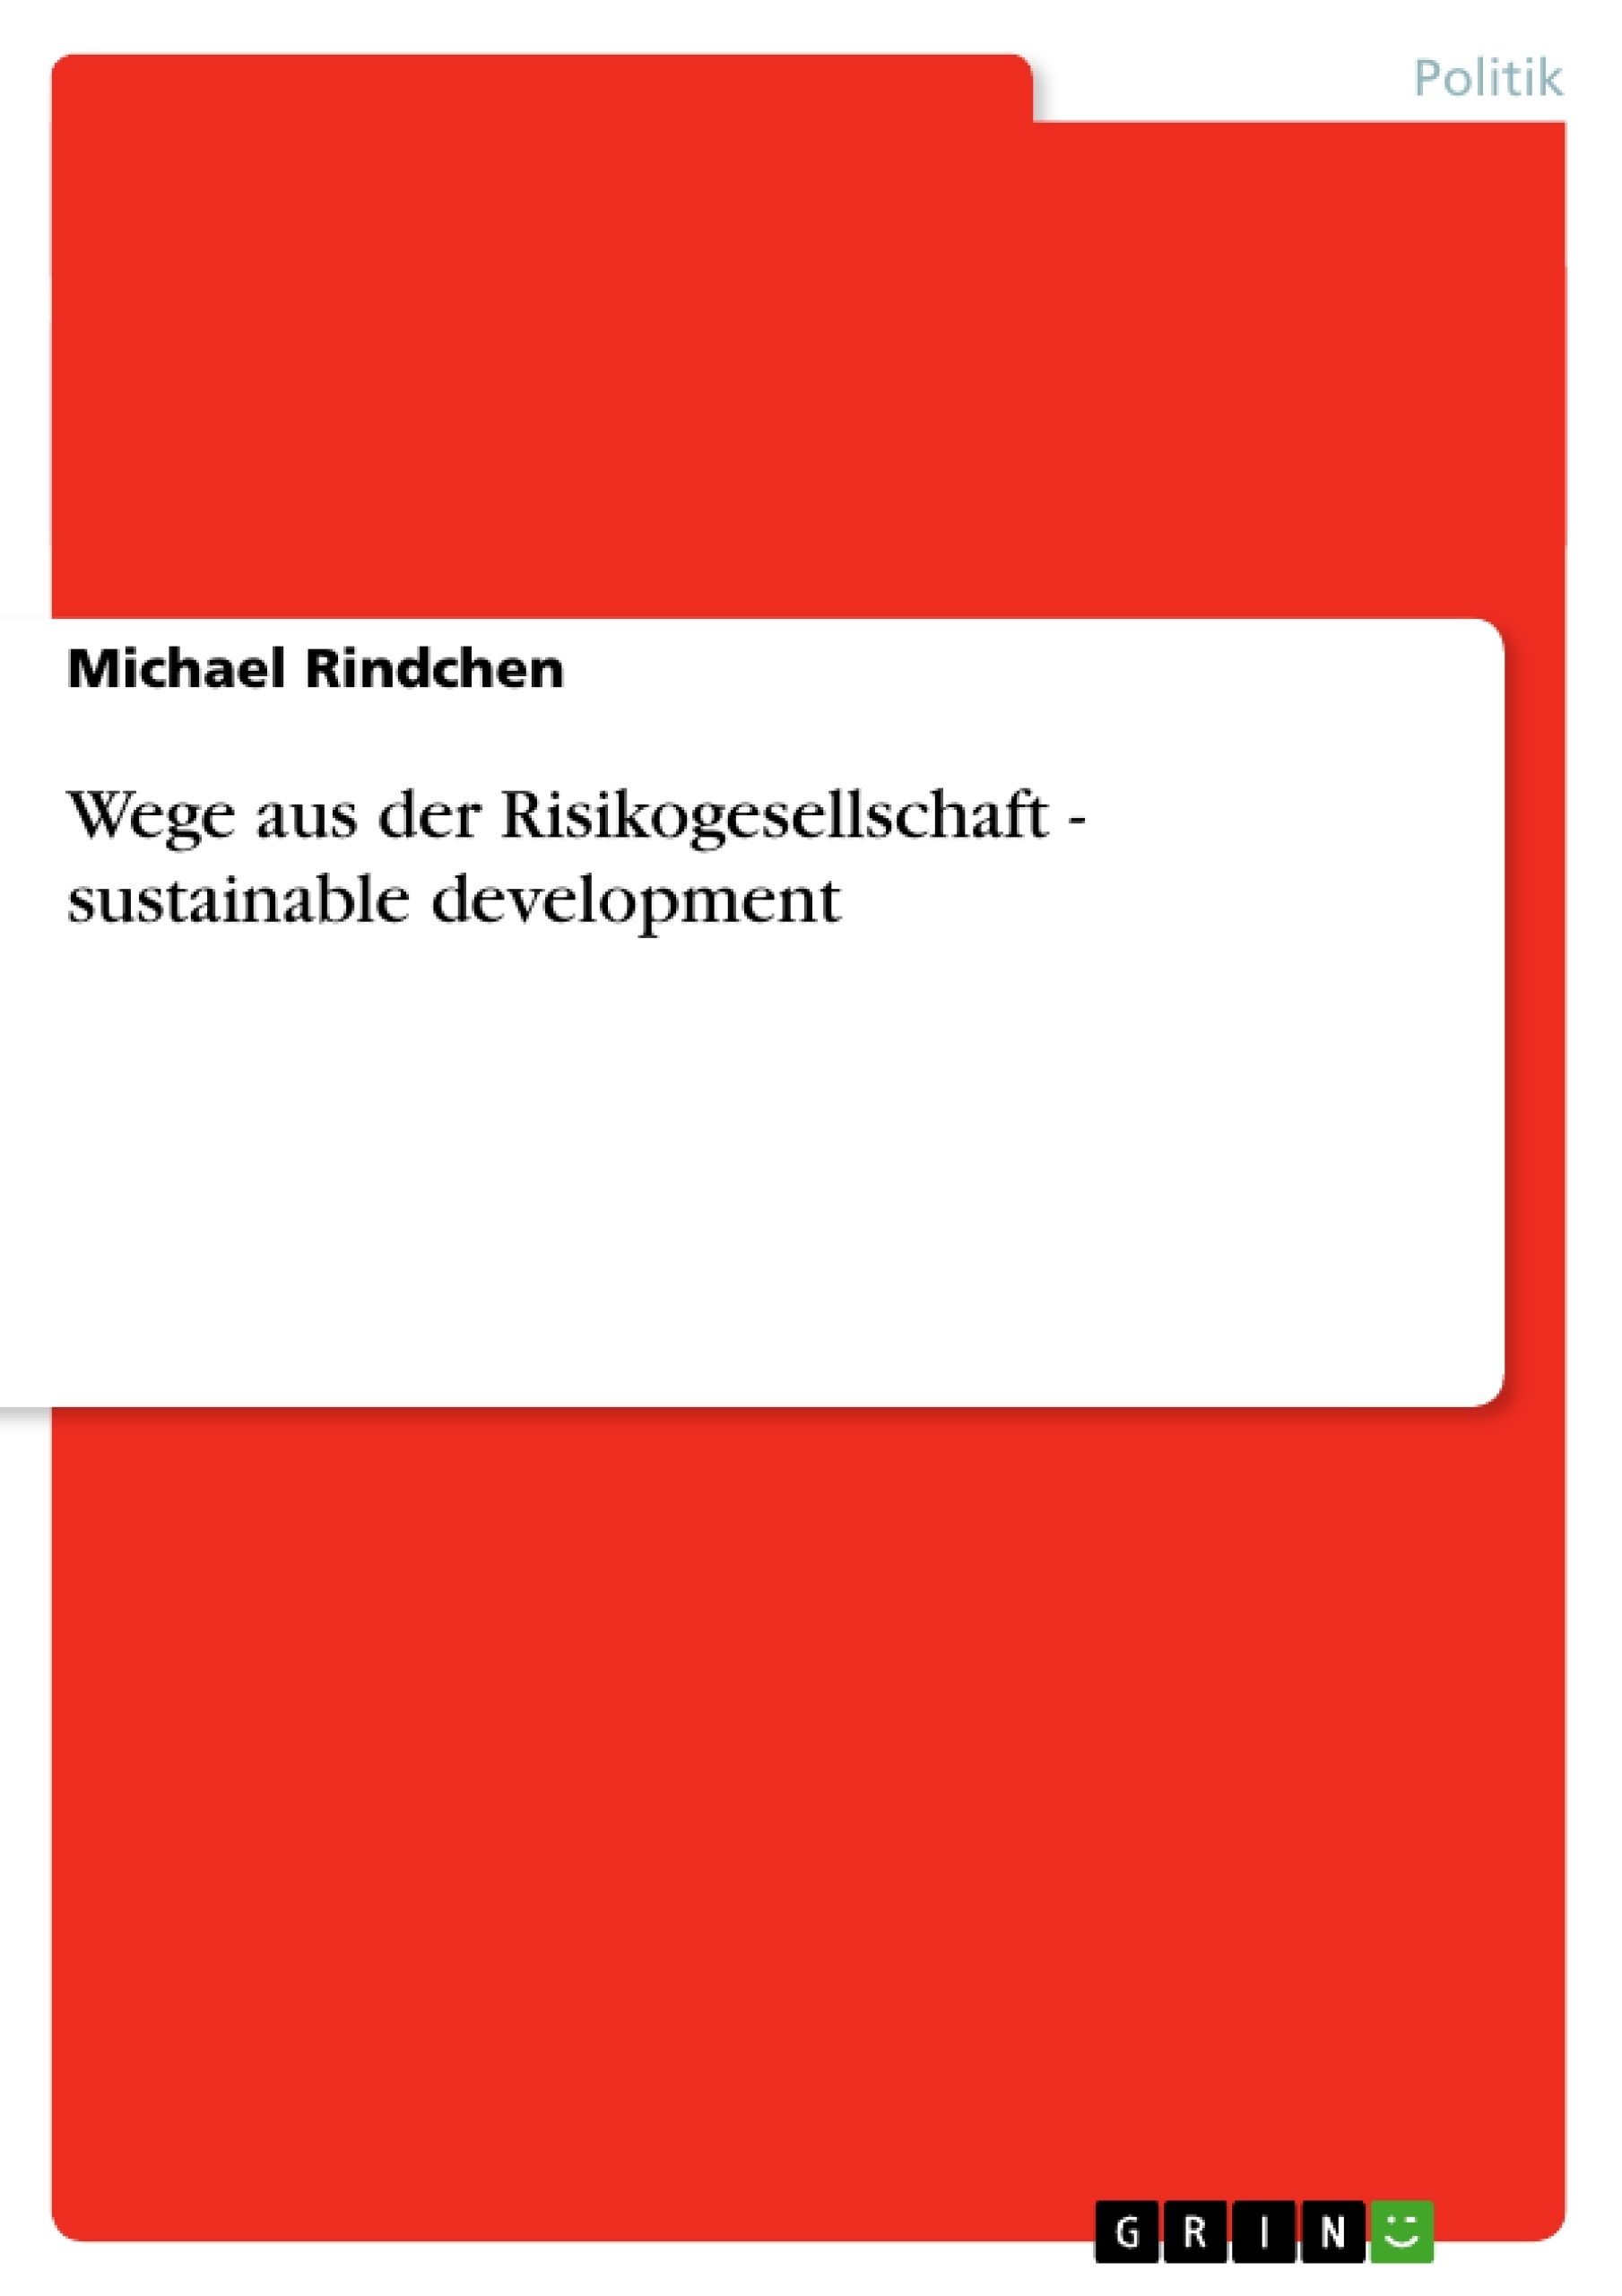 Título: Wege aus der Risikogesellschaft - sustainable development